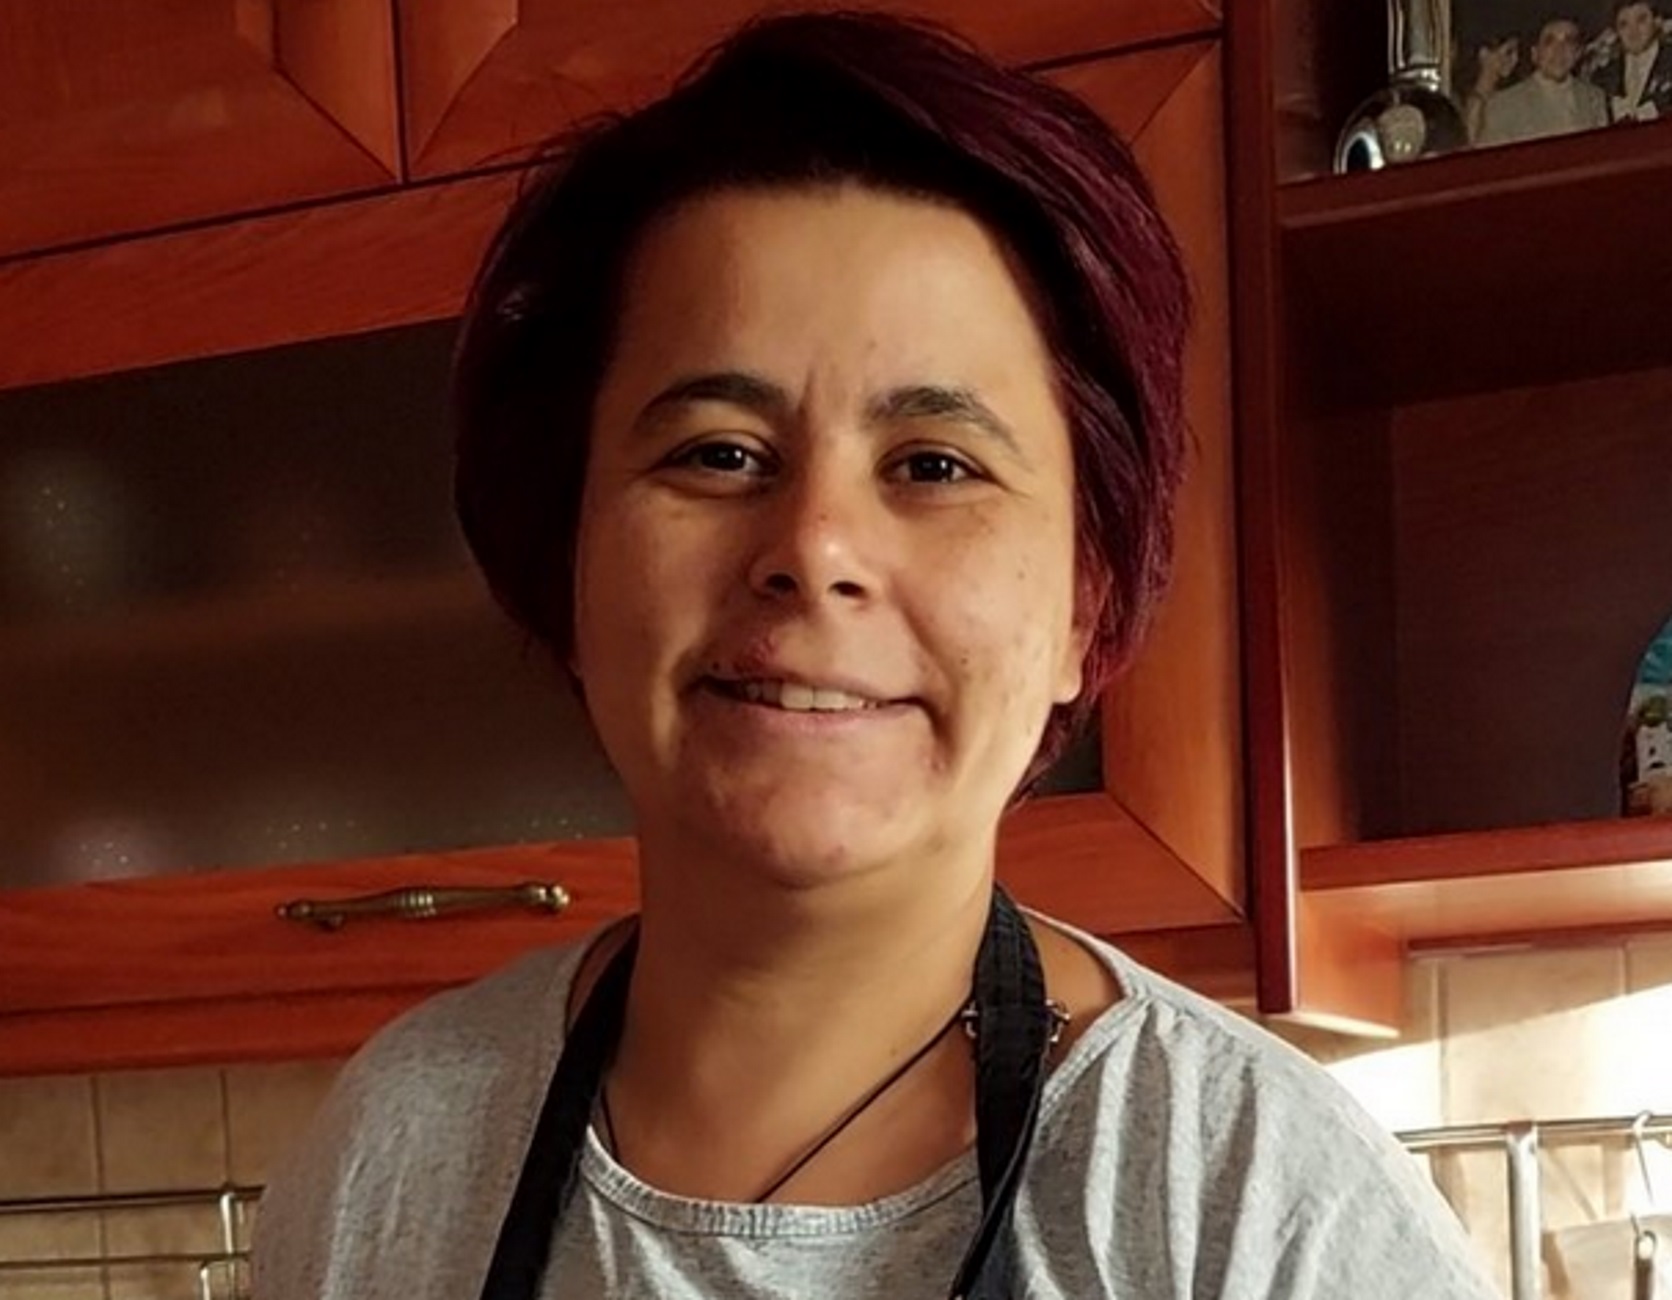 Πέλλα: Γνωρίστε την αγρότισσα που τα «σπάει» στο TikTok – Οι συνταγές που την έκαναν θέμα συζήτησης